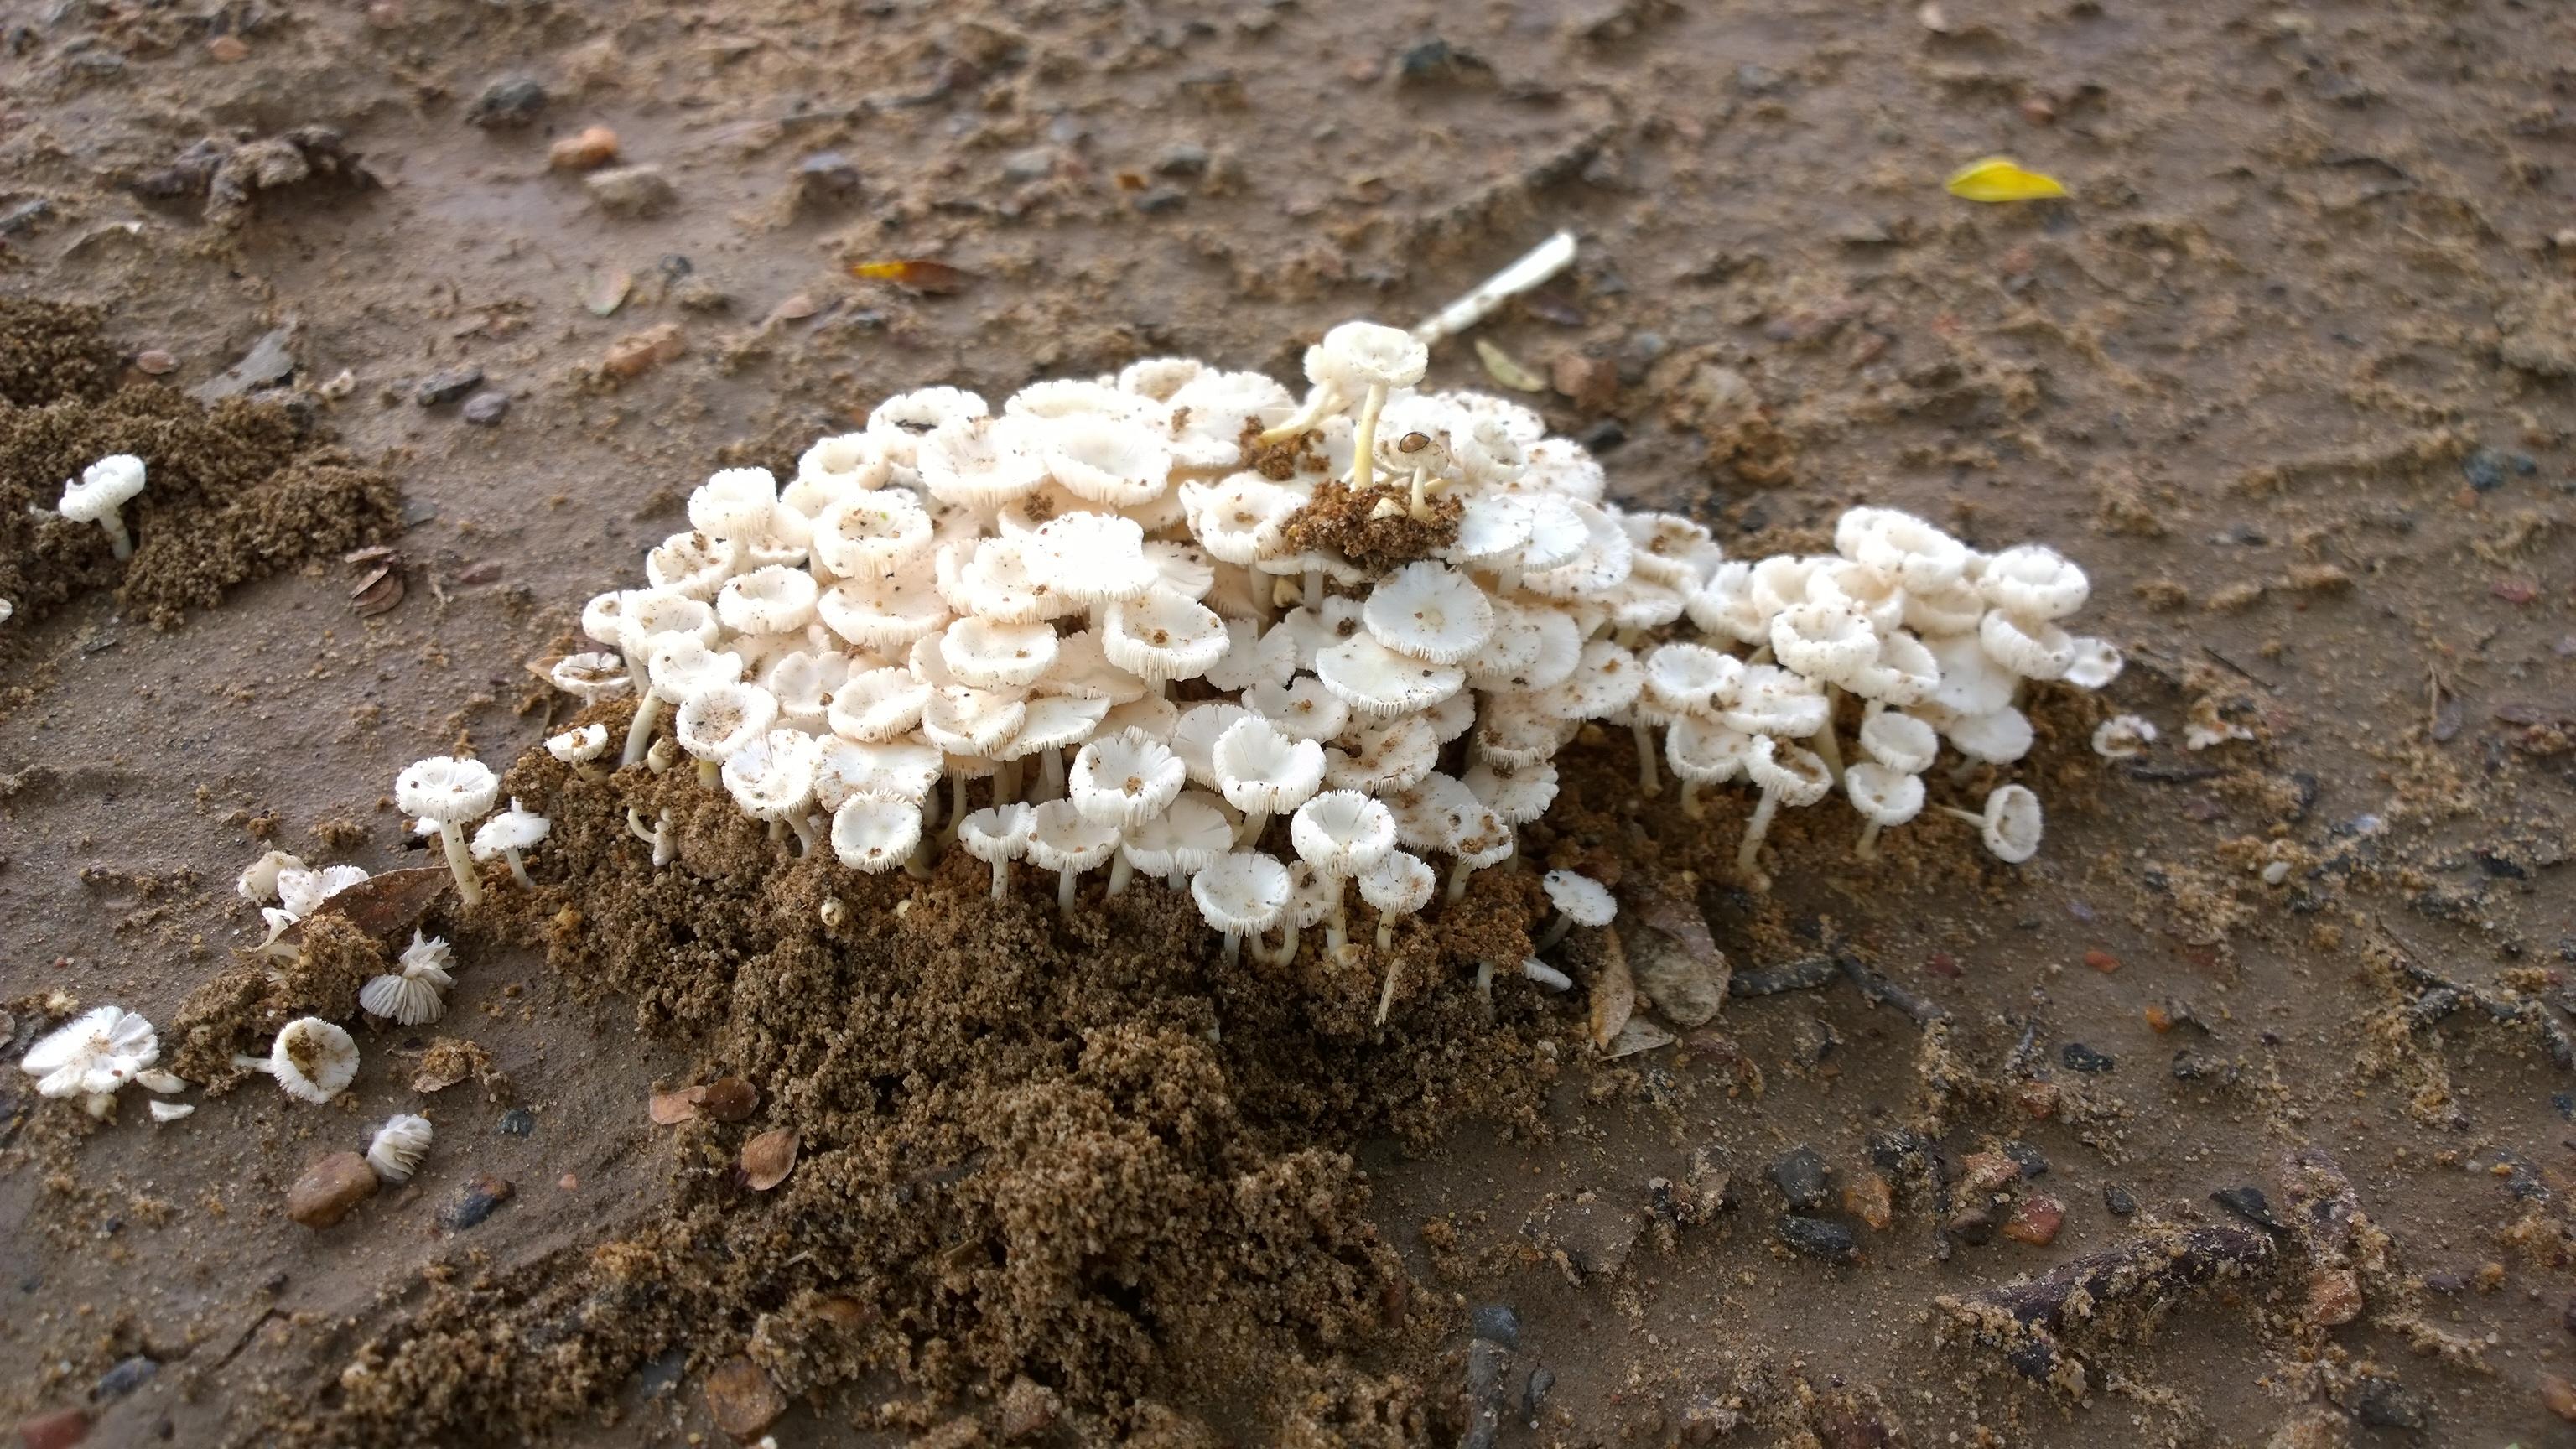 Предка выращиваемых термитами грибов заподозрили в предрасположенности к одомашниванию